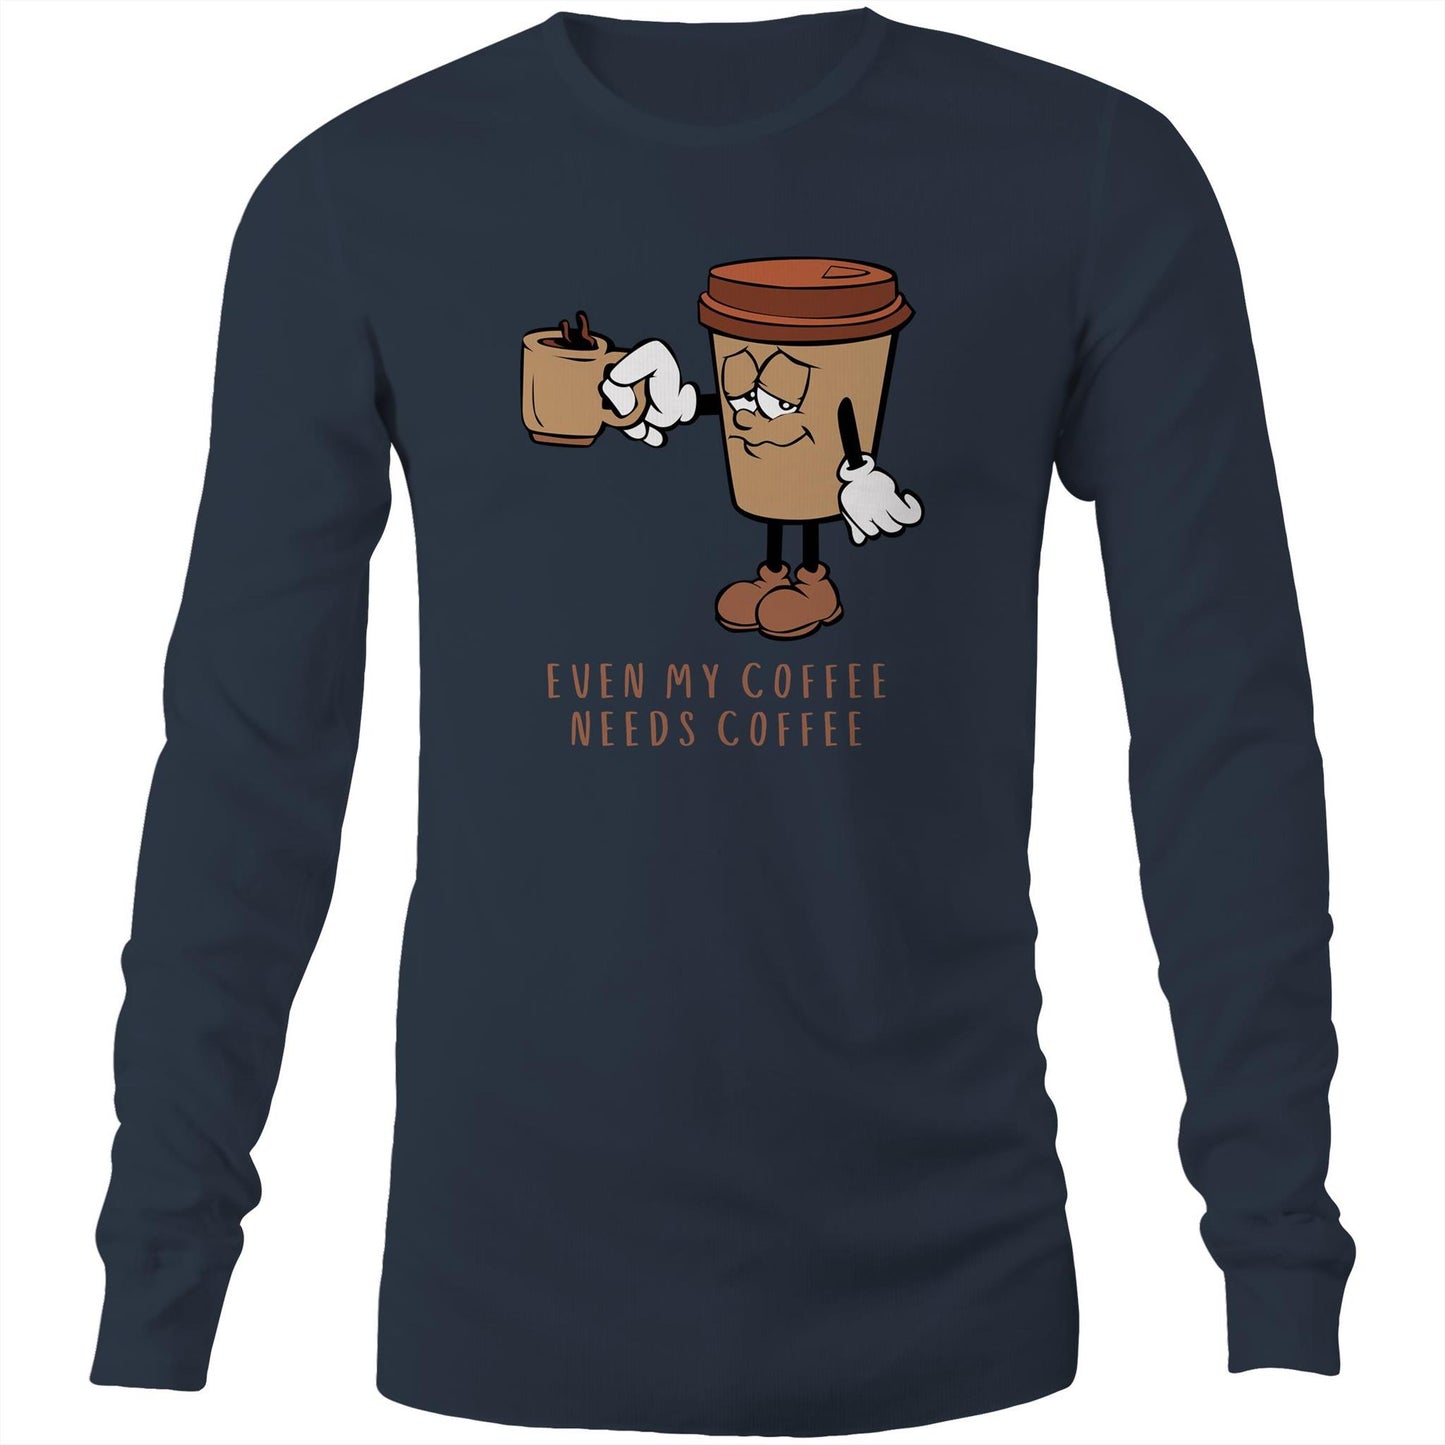 Even My Coffee Needs Coffee - Long Sleeve T-Shirt Navy Unisex Long Sleeve T-shirt Coffee